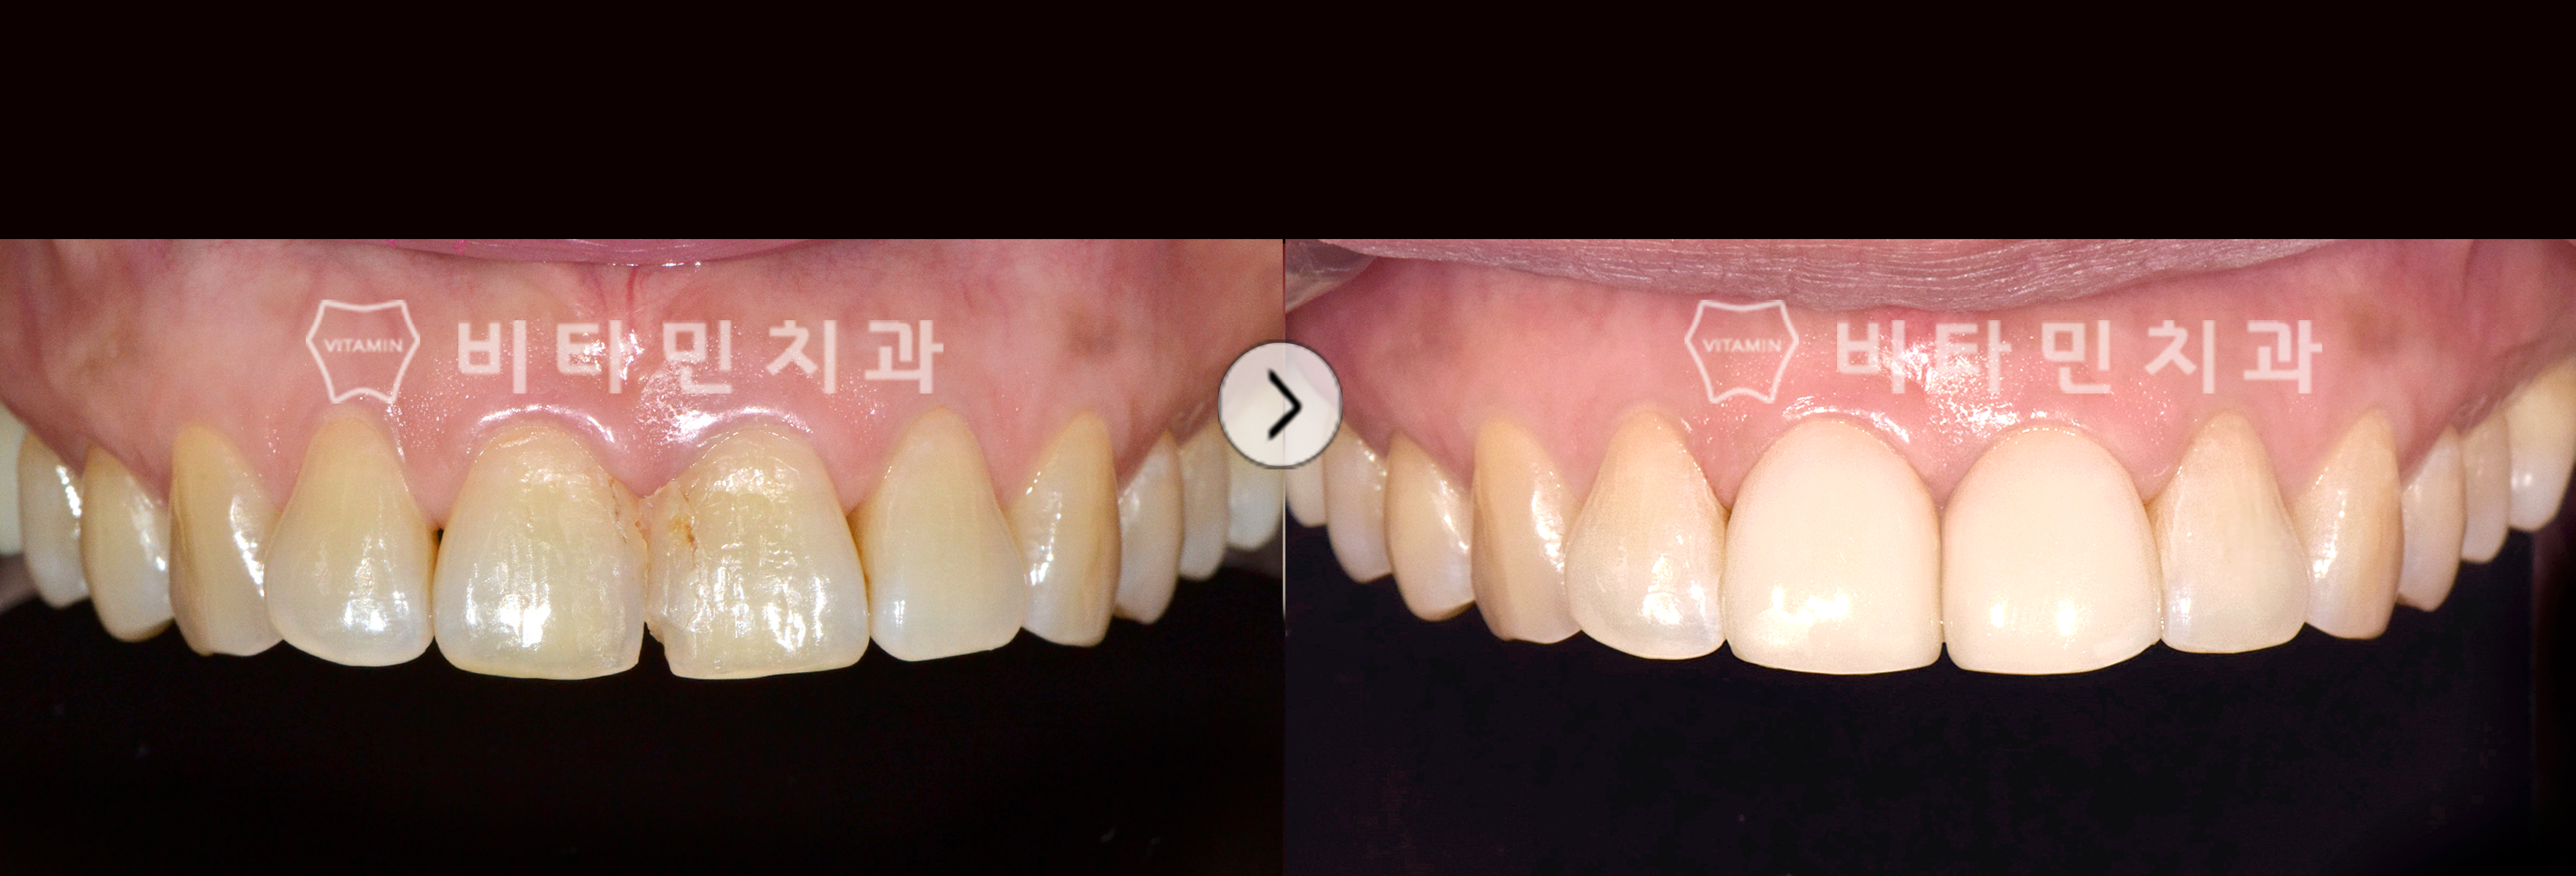 오래된 레진과 착색된 치아를 앞니 비타코팅으로 전체적인 치아 심미 개선